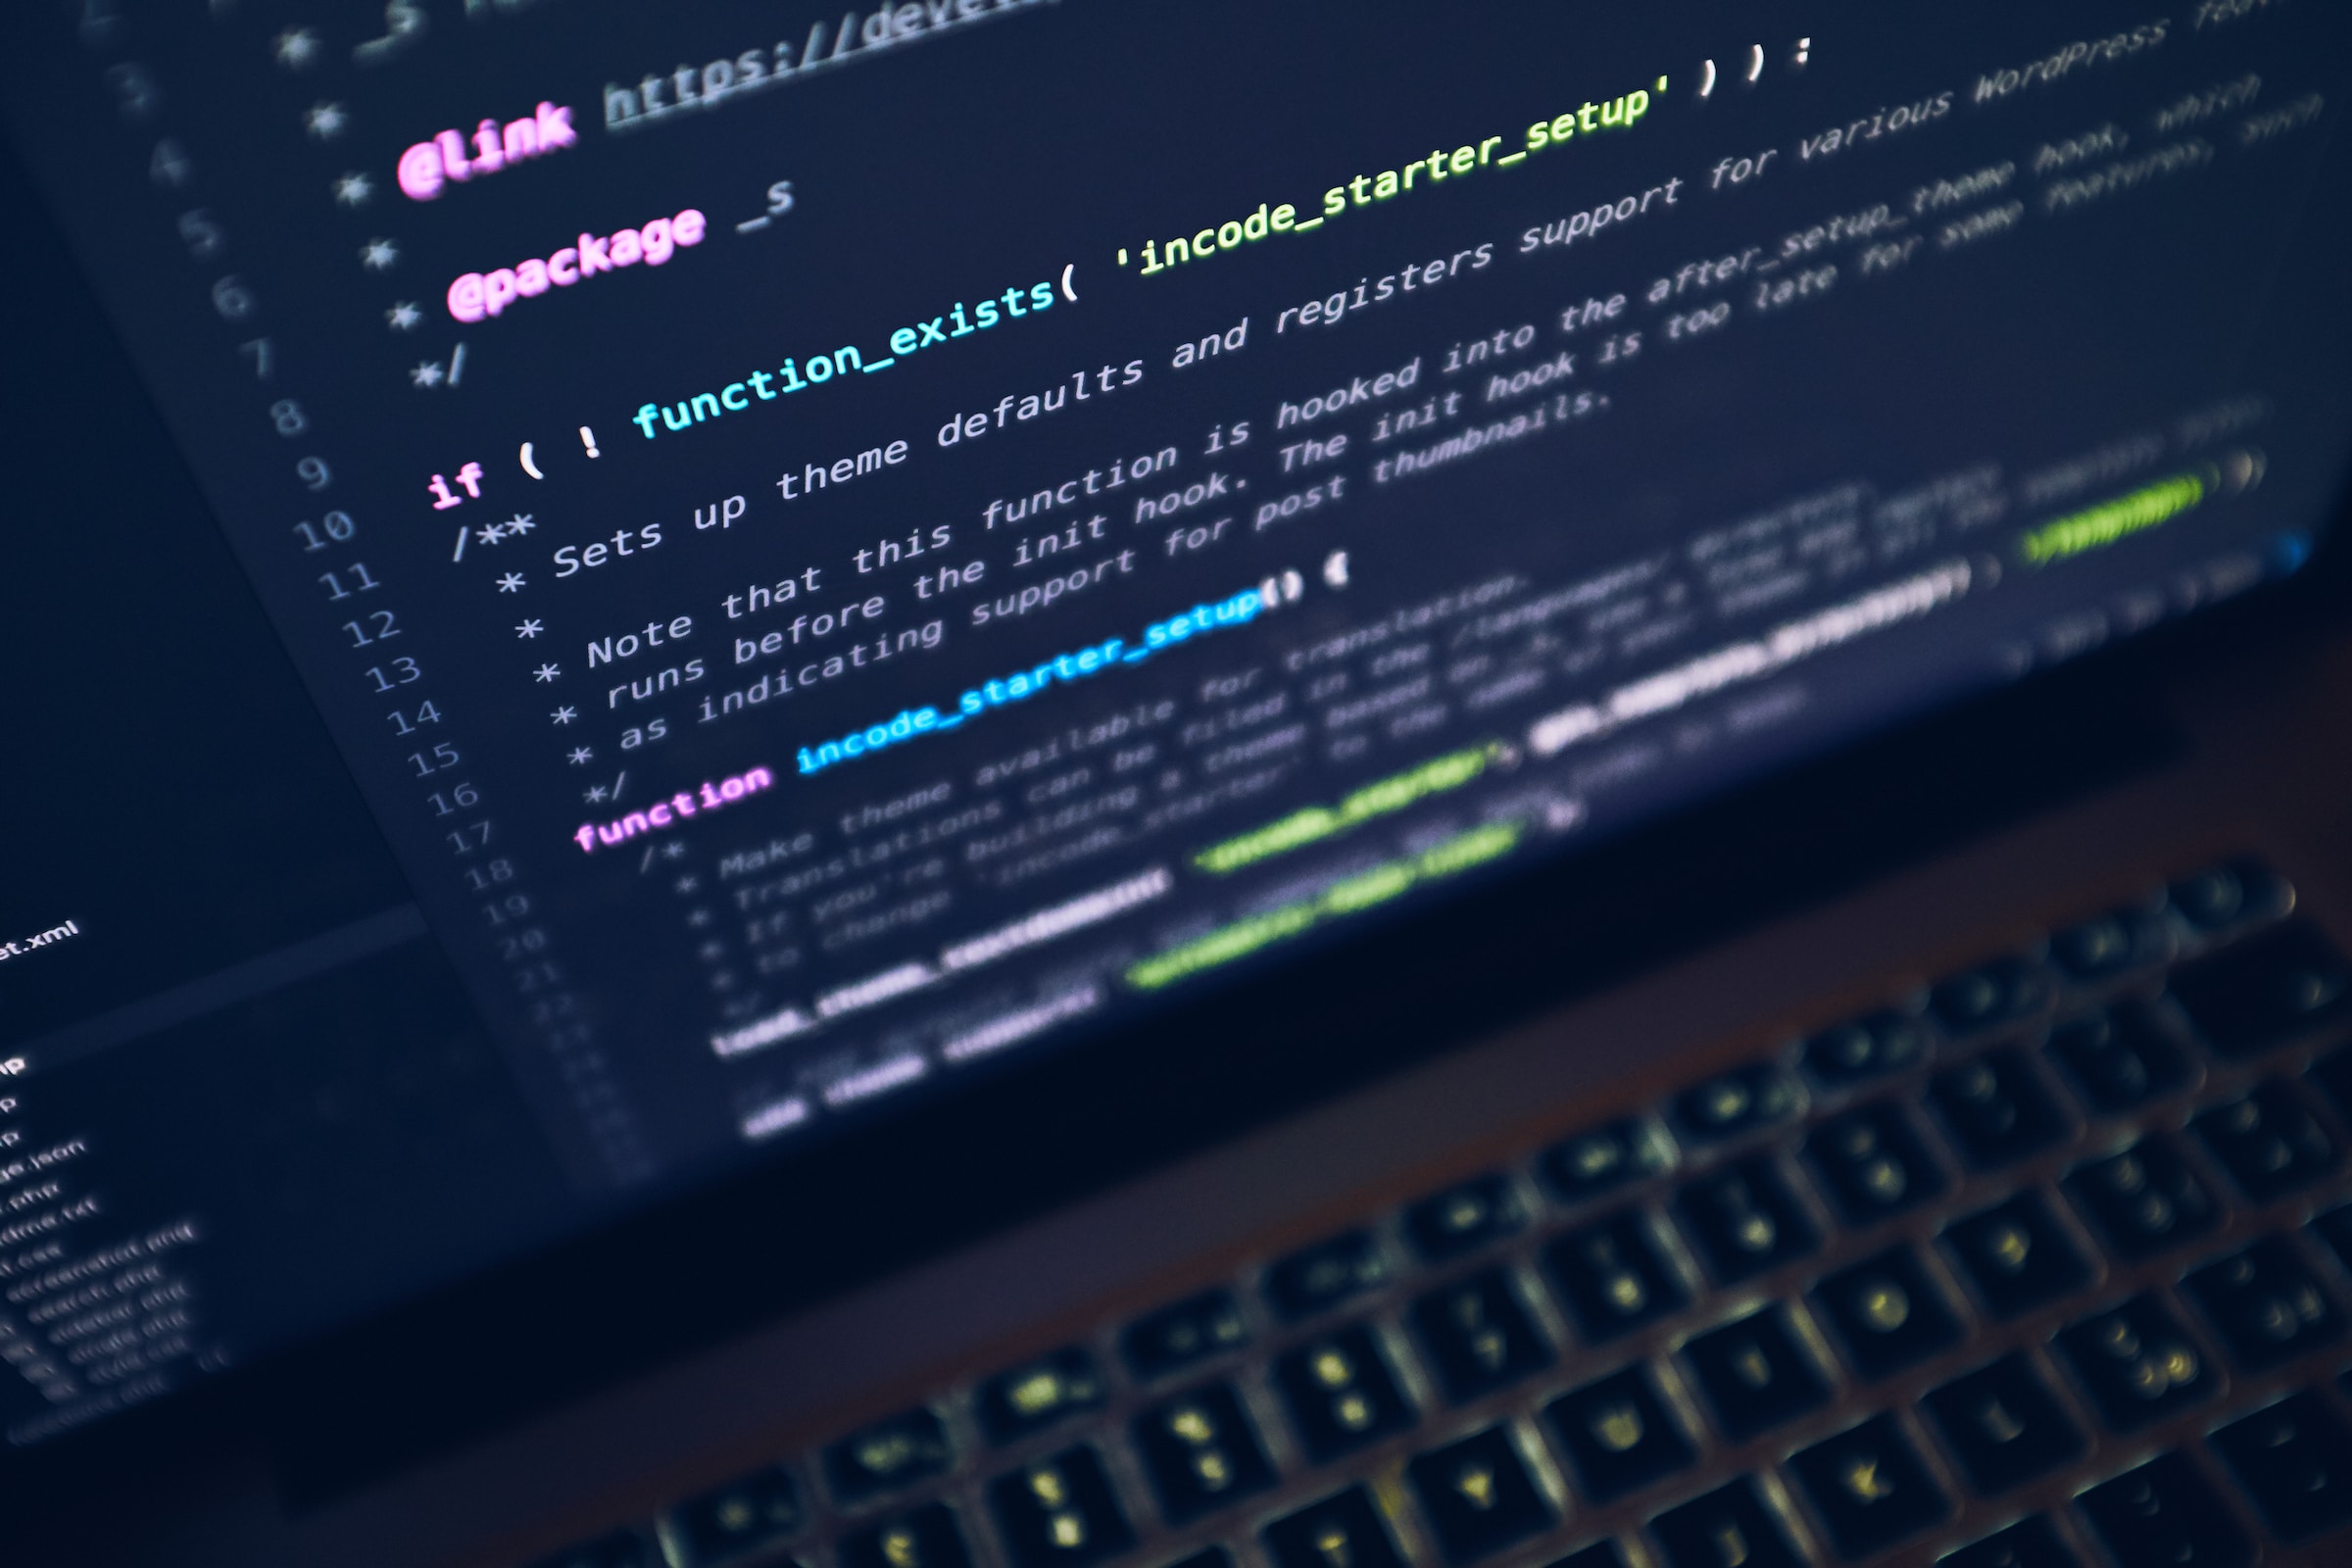 GitLab: Developers view AI as ‘essential’ despite concerns